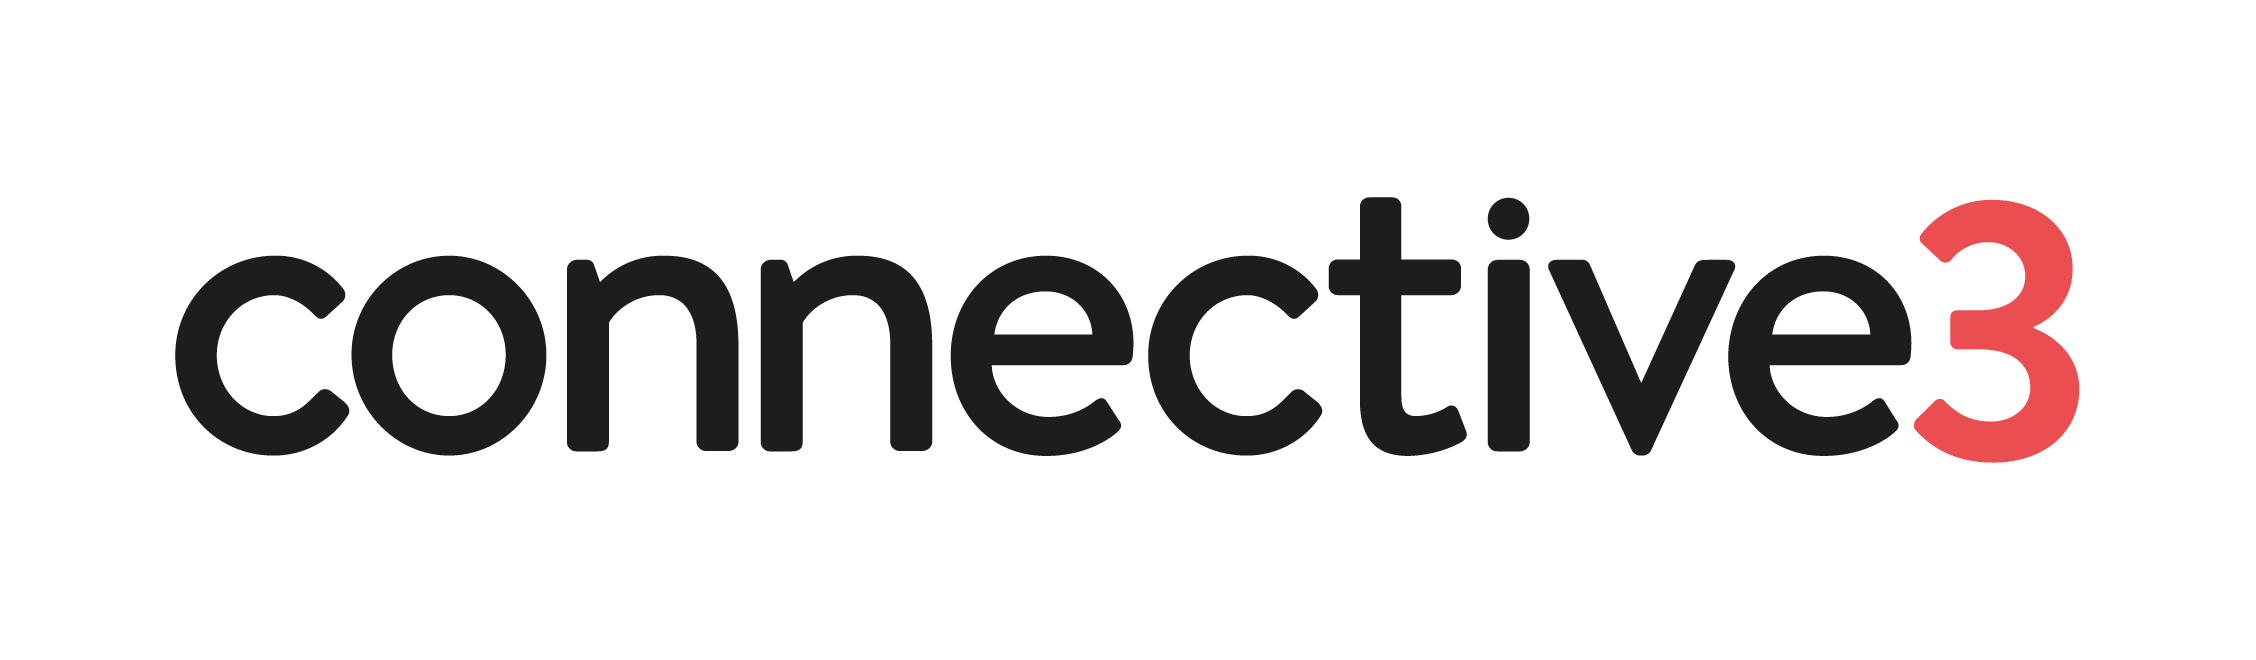 Connective3 logo